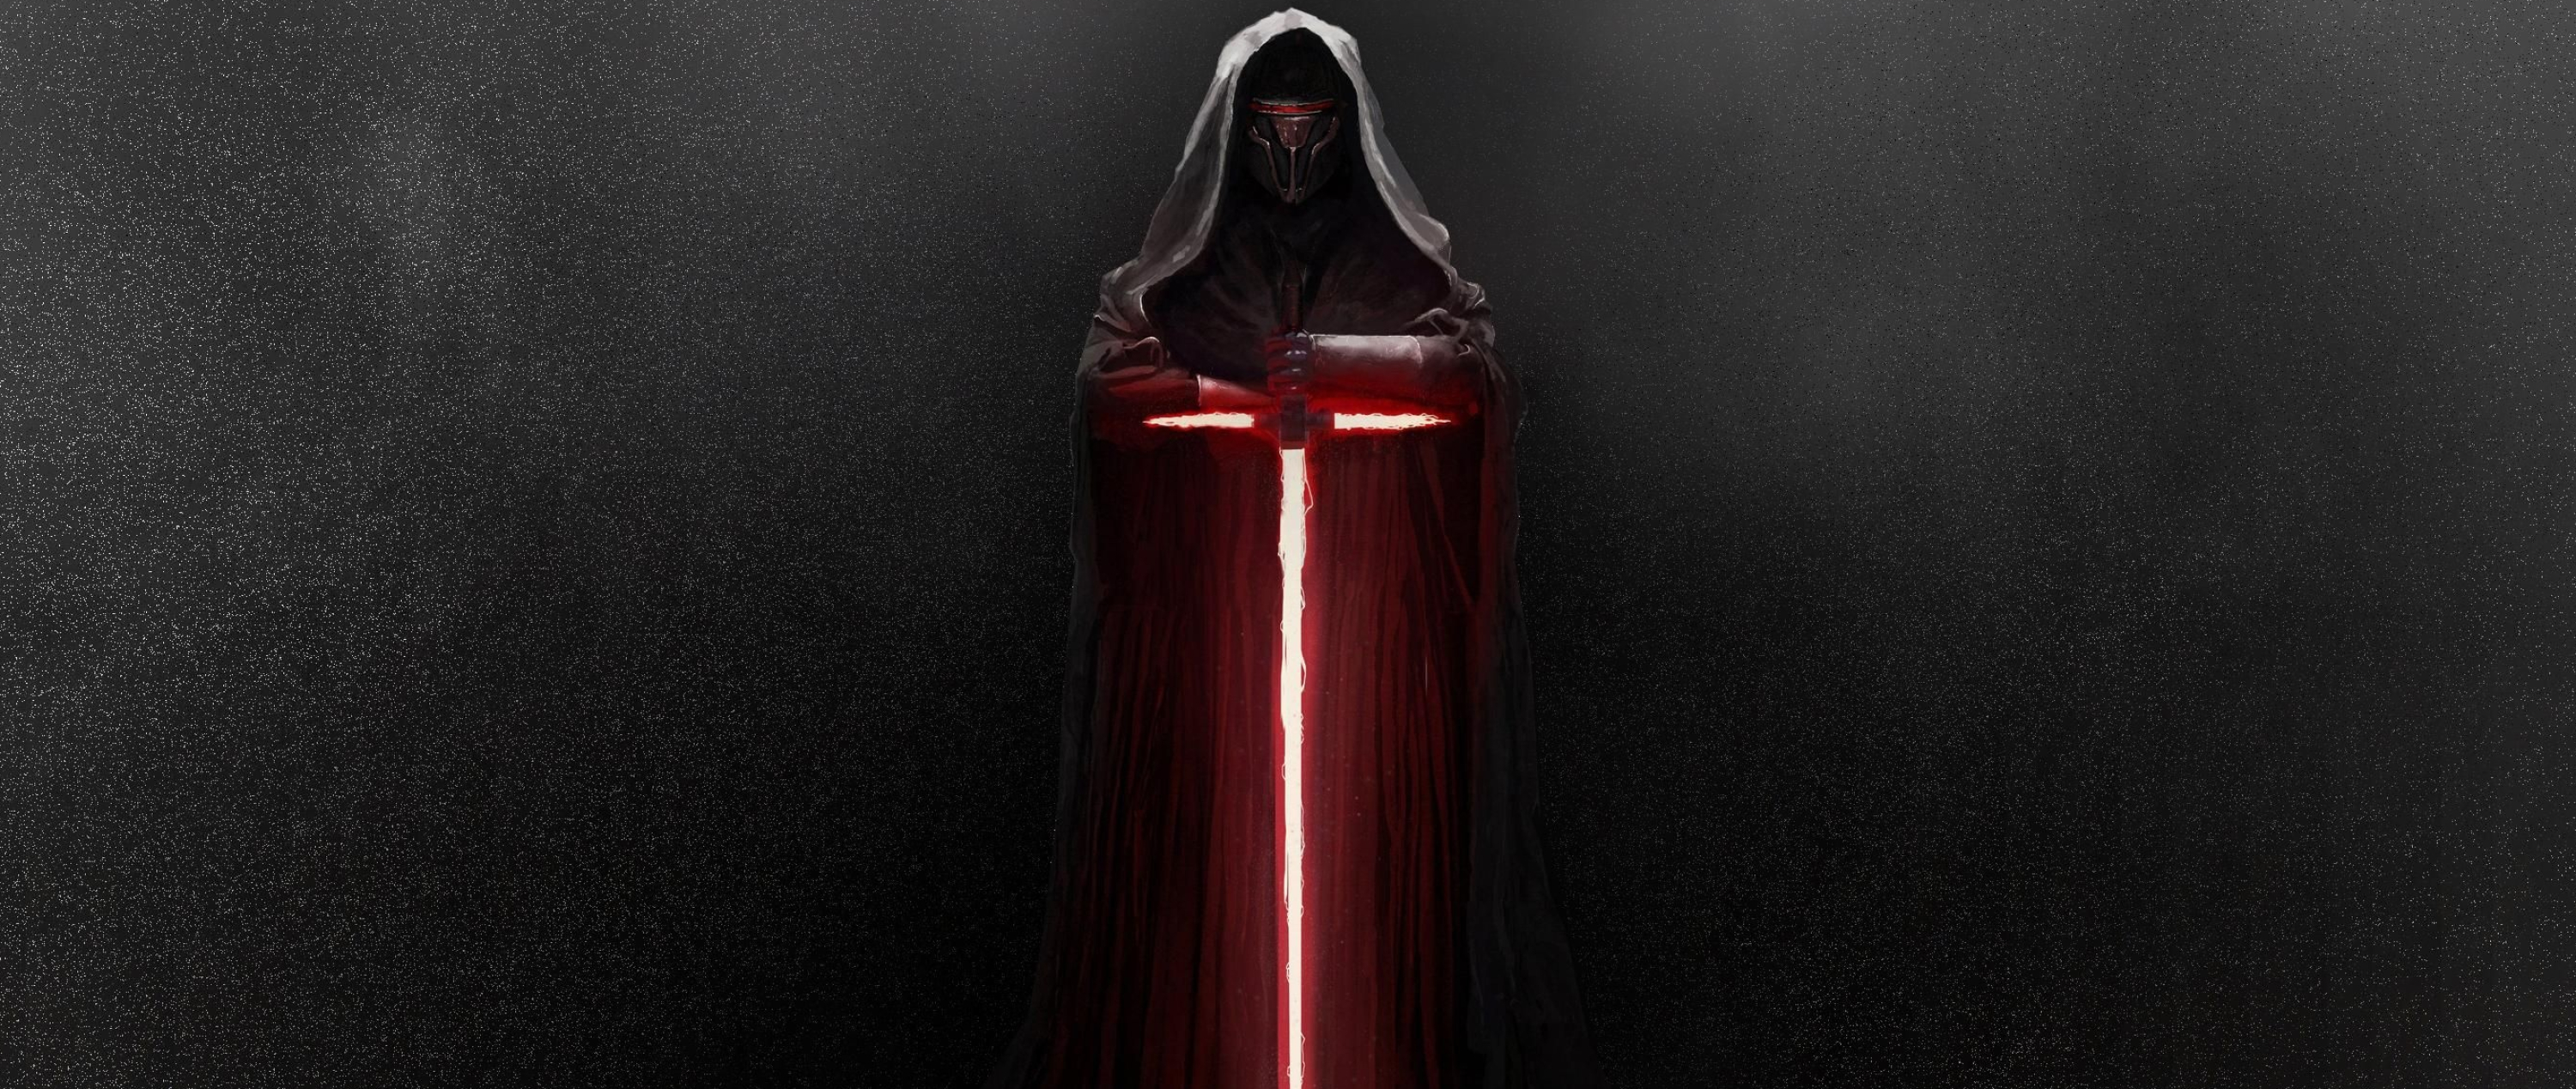 Kylo Ren's lightsaber, Star Wars fan art, Dark side power, Epic weapon design, 3000x1270 Dual Screen Desktop